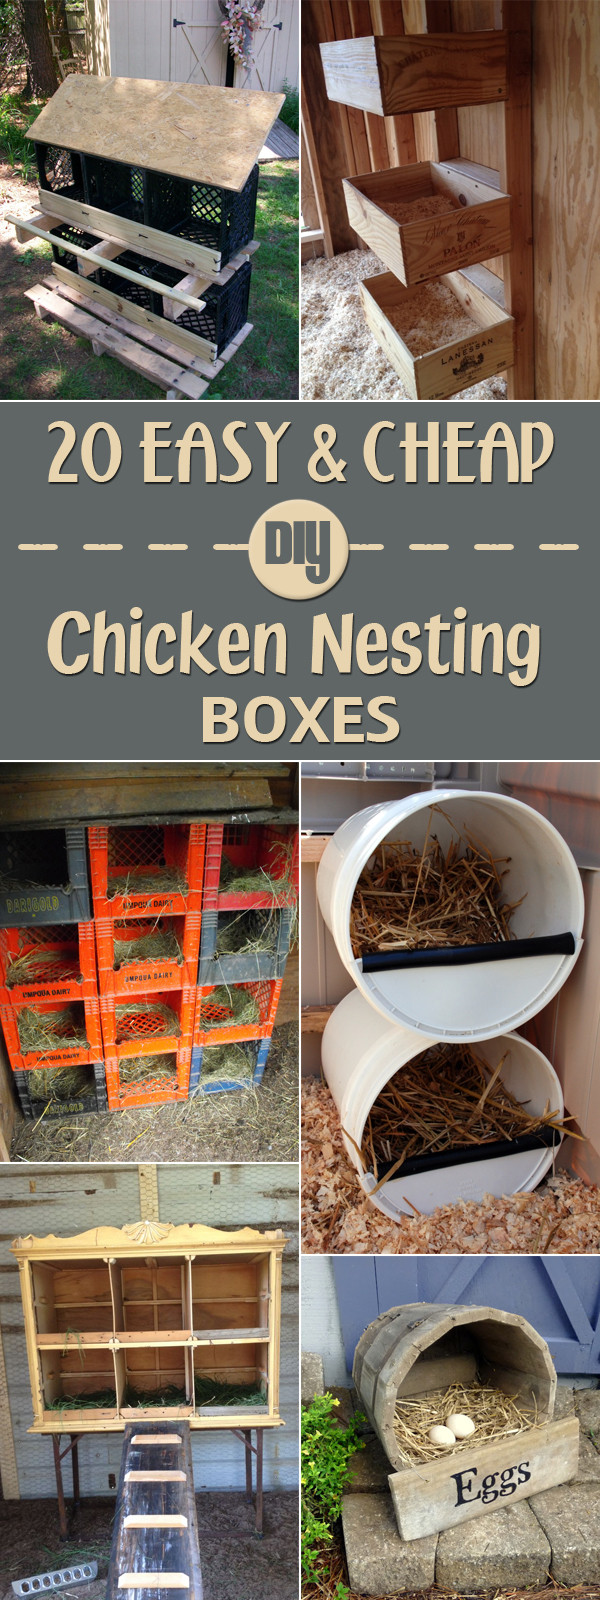 DIY Chicken Nest Box
 20 Easy & Cheap DIY Chicken Nesting Boxes